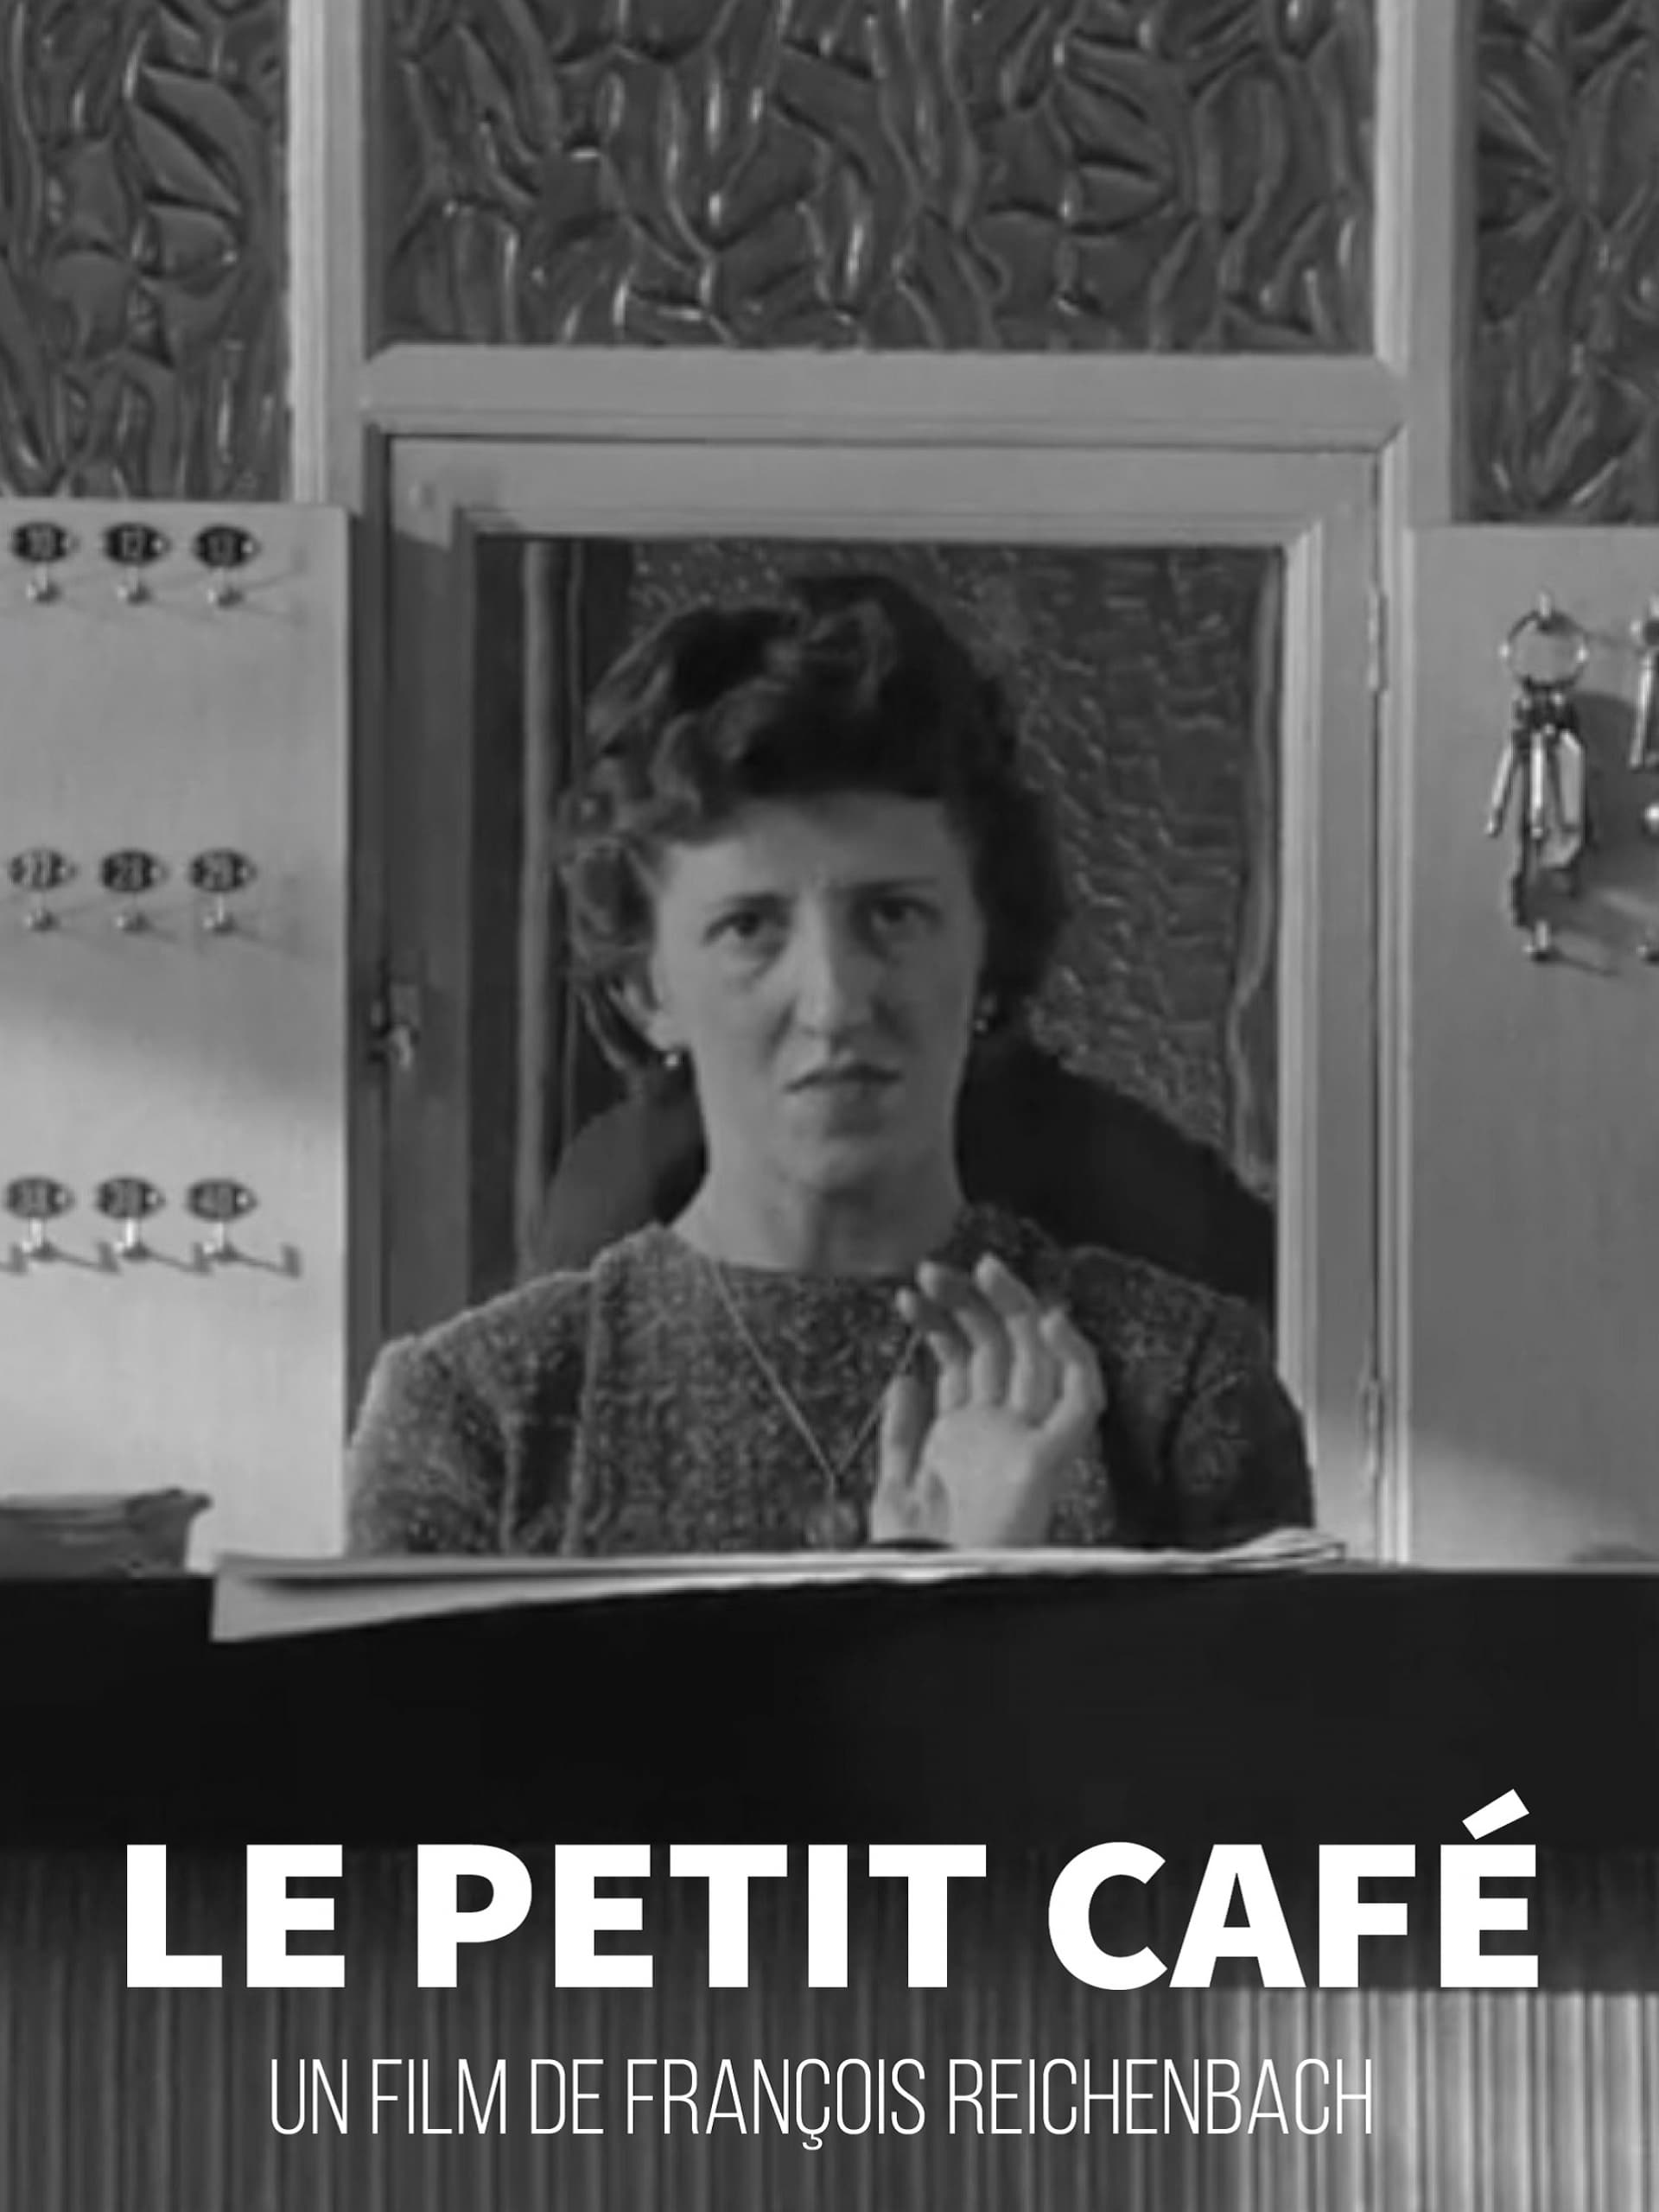 The Little Café